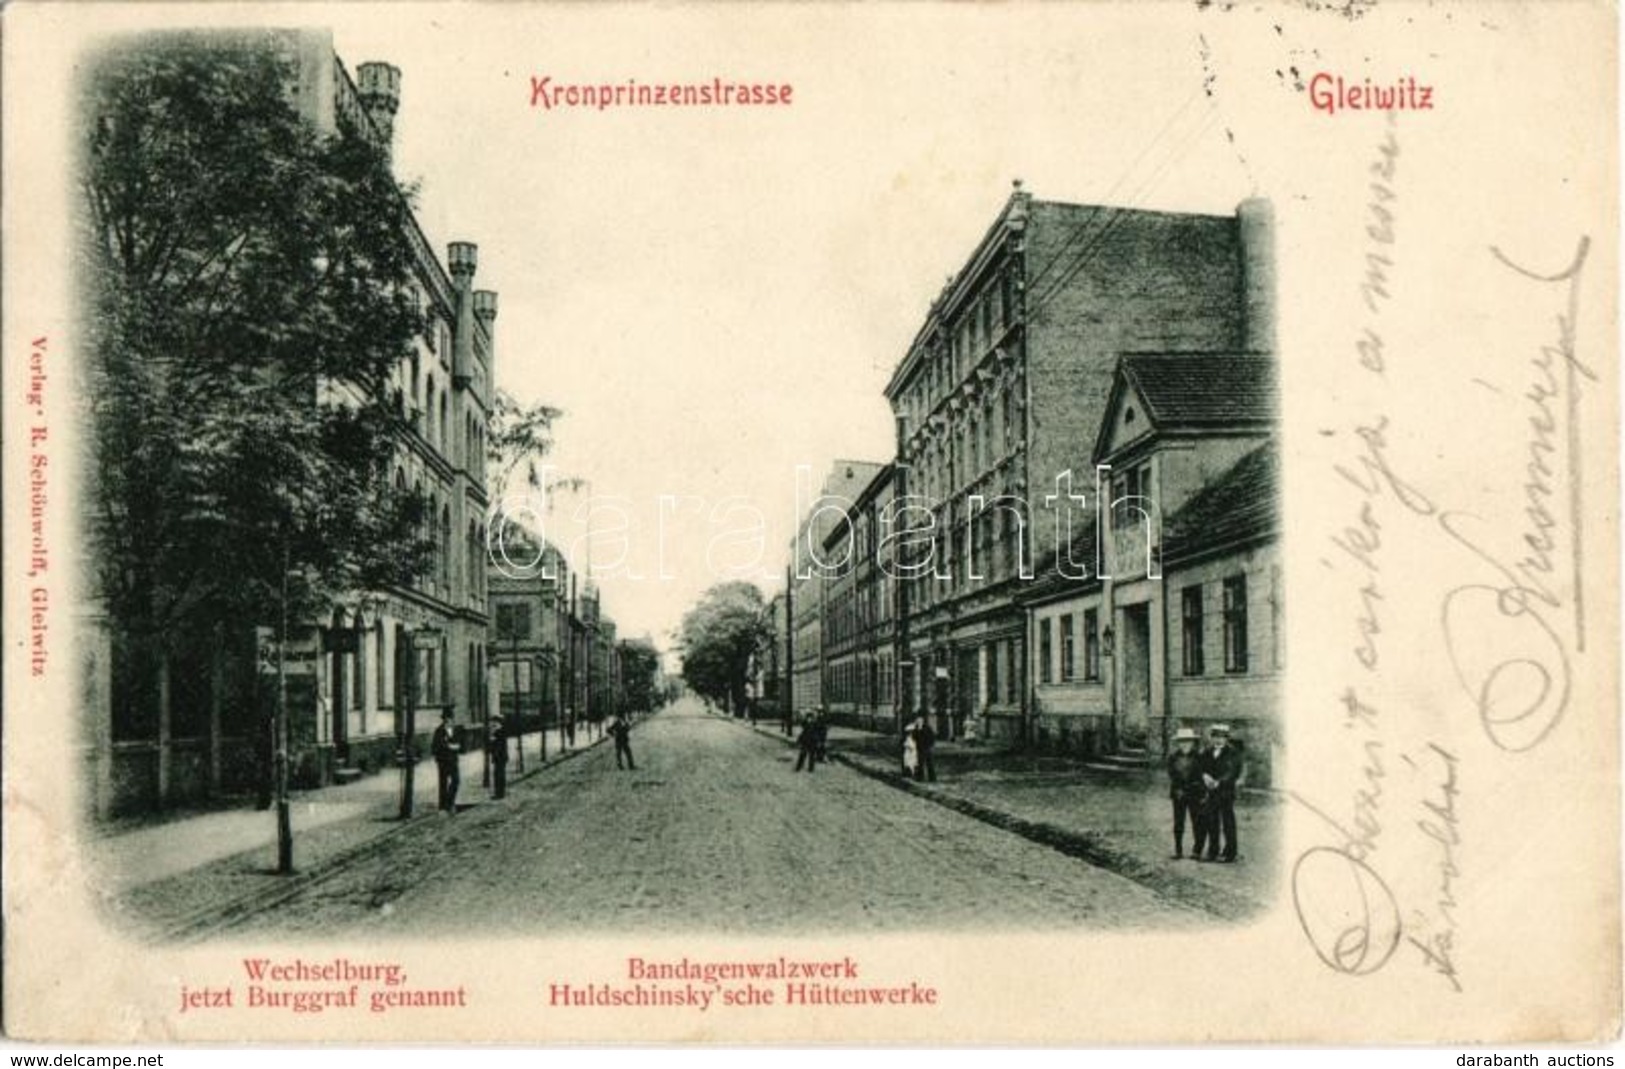 T2 1900 Gliwice, Gleiwitz; Kronprinzstrasse, Wechselburg (jetzt Burggraf Genannt), Bandagenwalzwerk Huldschinsky'sche Hü - Non Classés